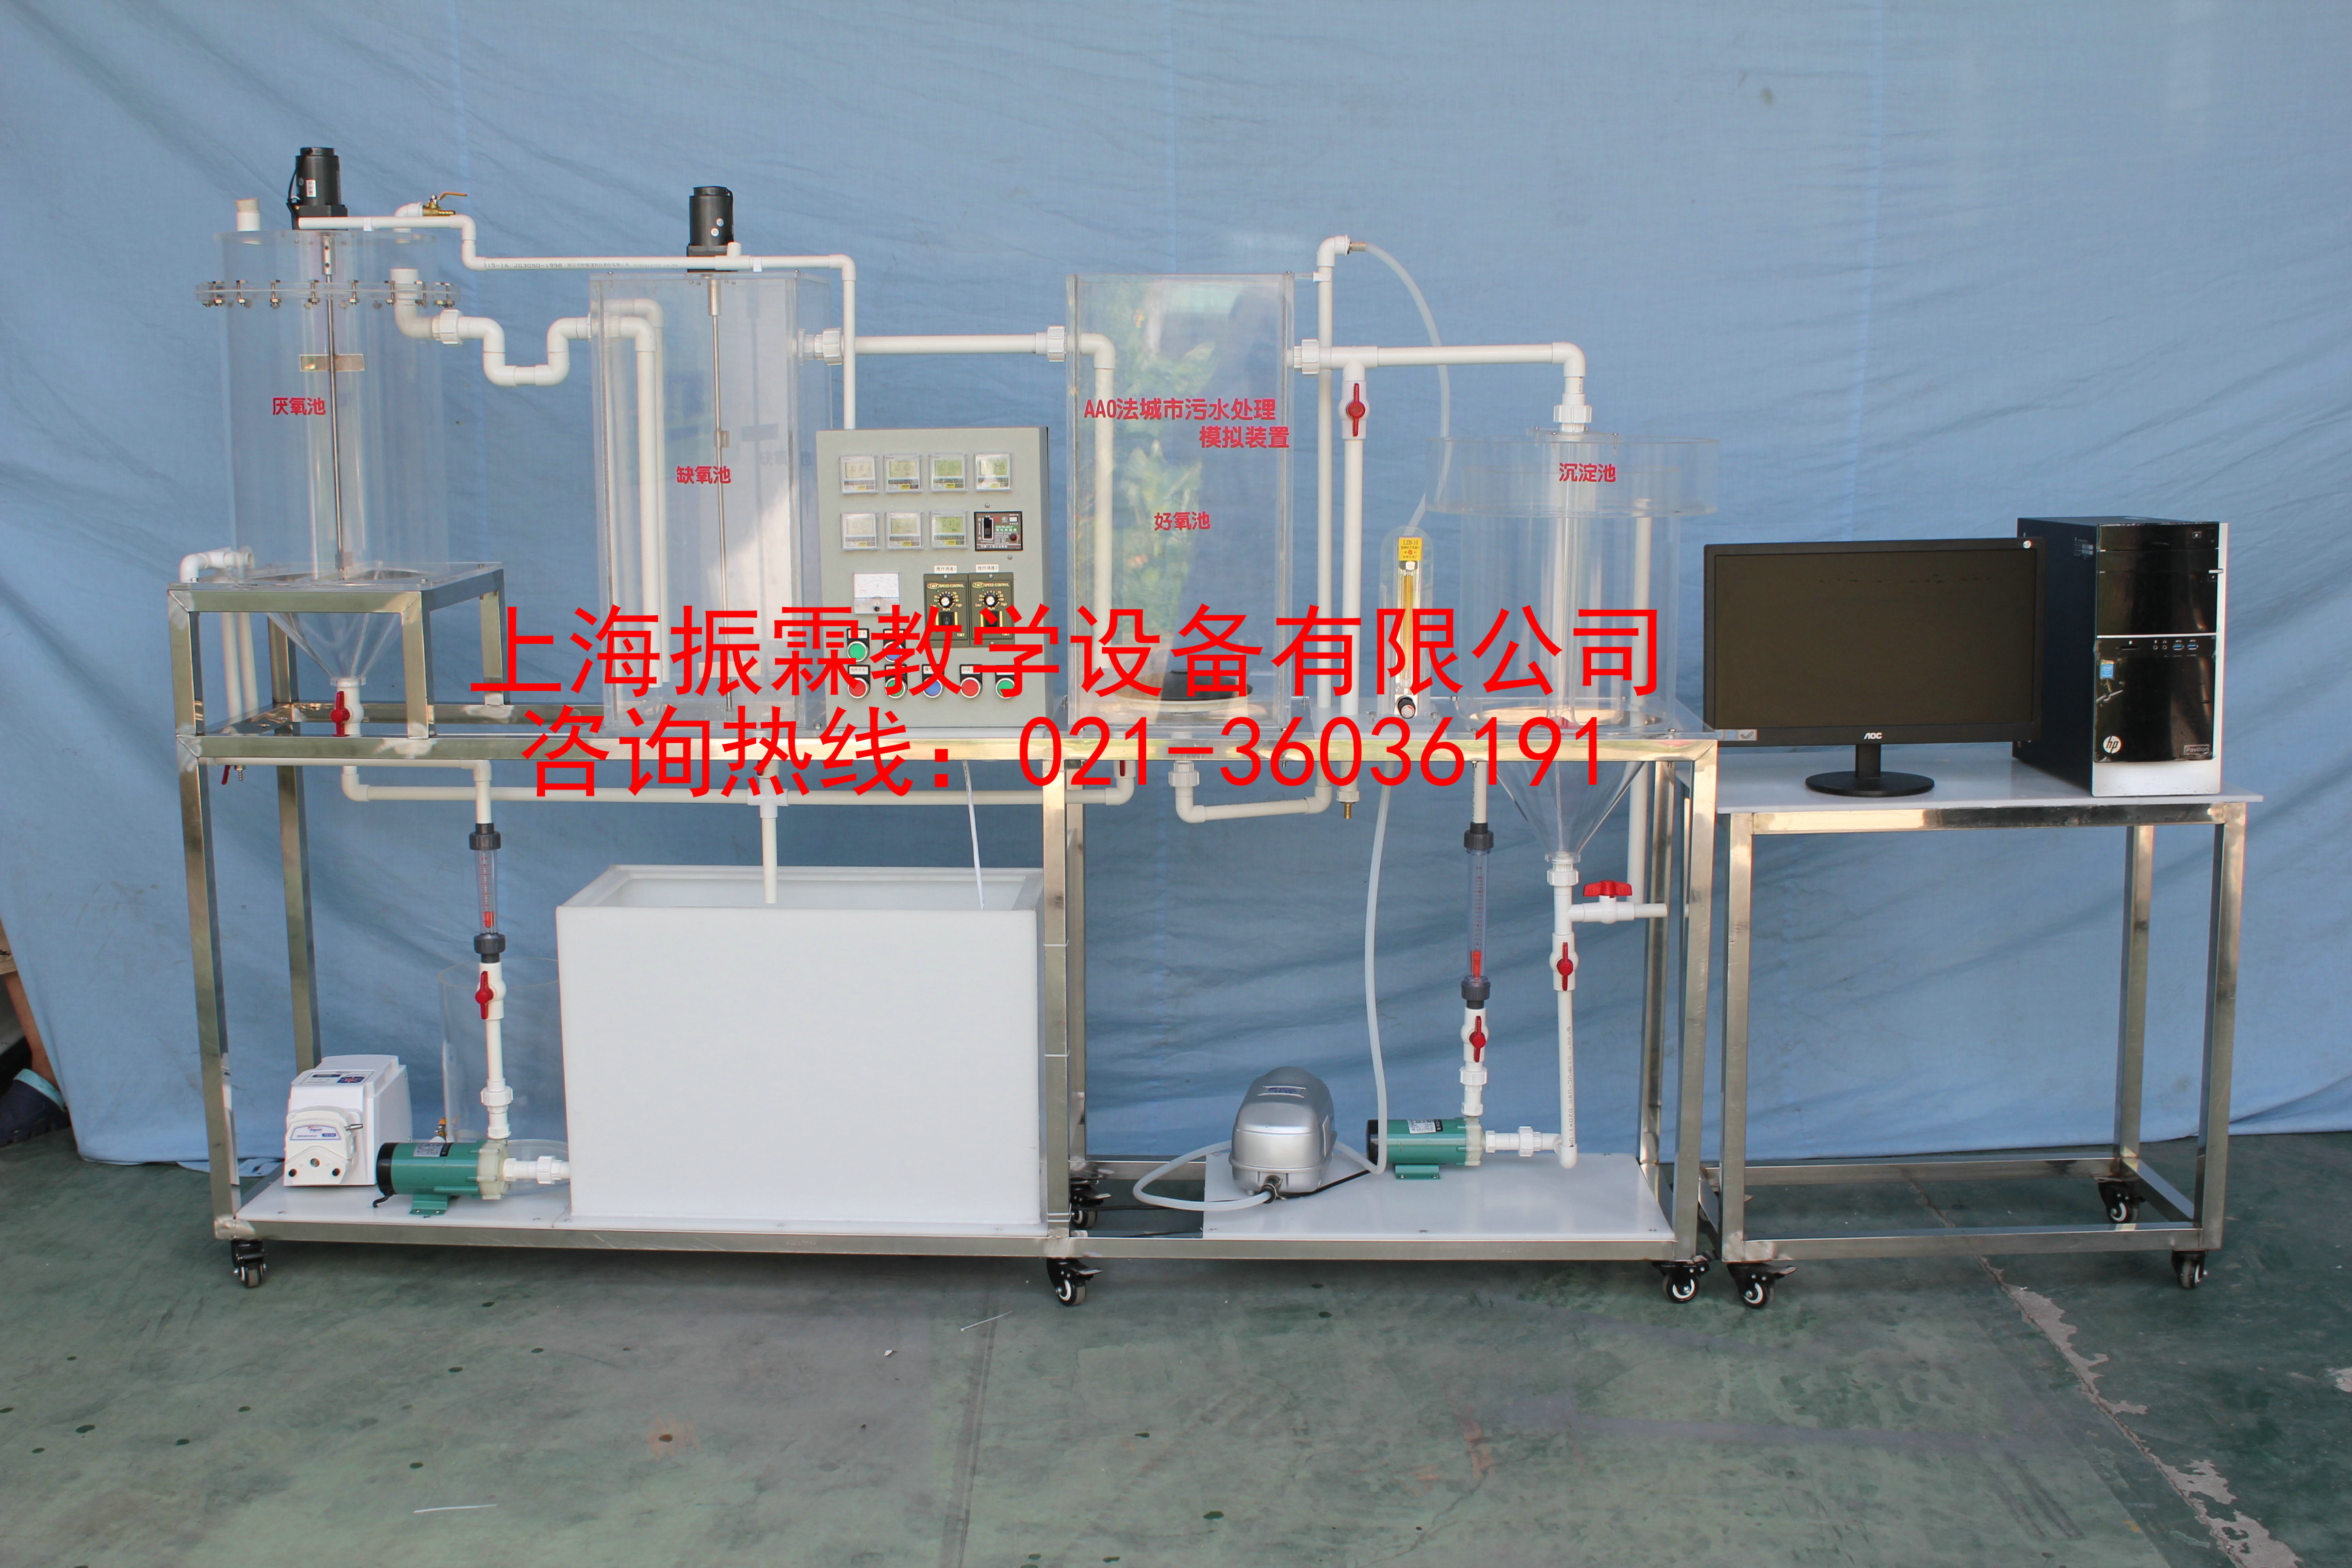 A2O法城市污水处理模拟实验设备|污水处理模拟装置|环境工程实训设备--上海振霖教学设备有限公司